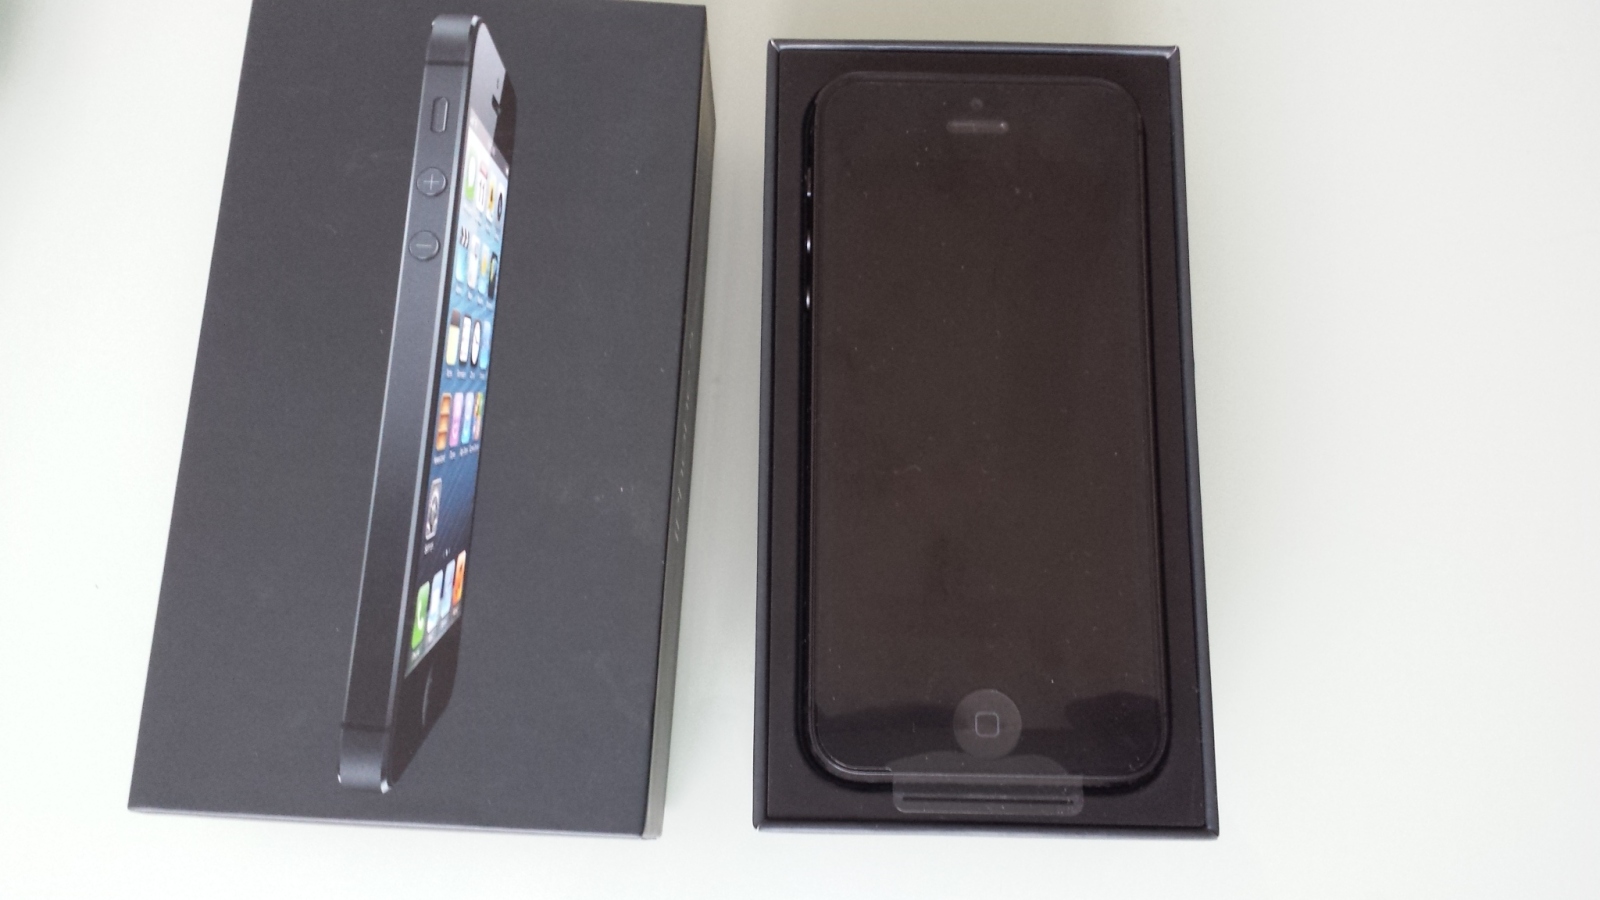  Satilik Sifir Iphone 5 16gb siyah sim kilitsiz.